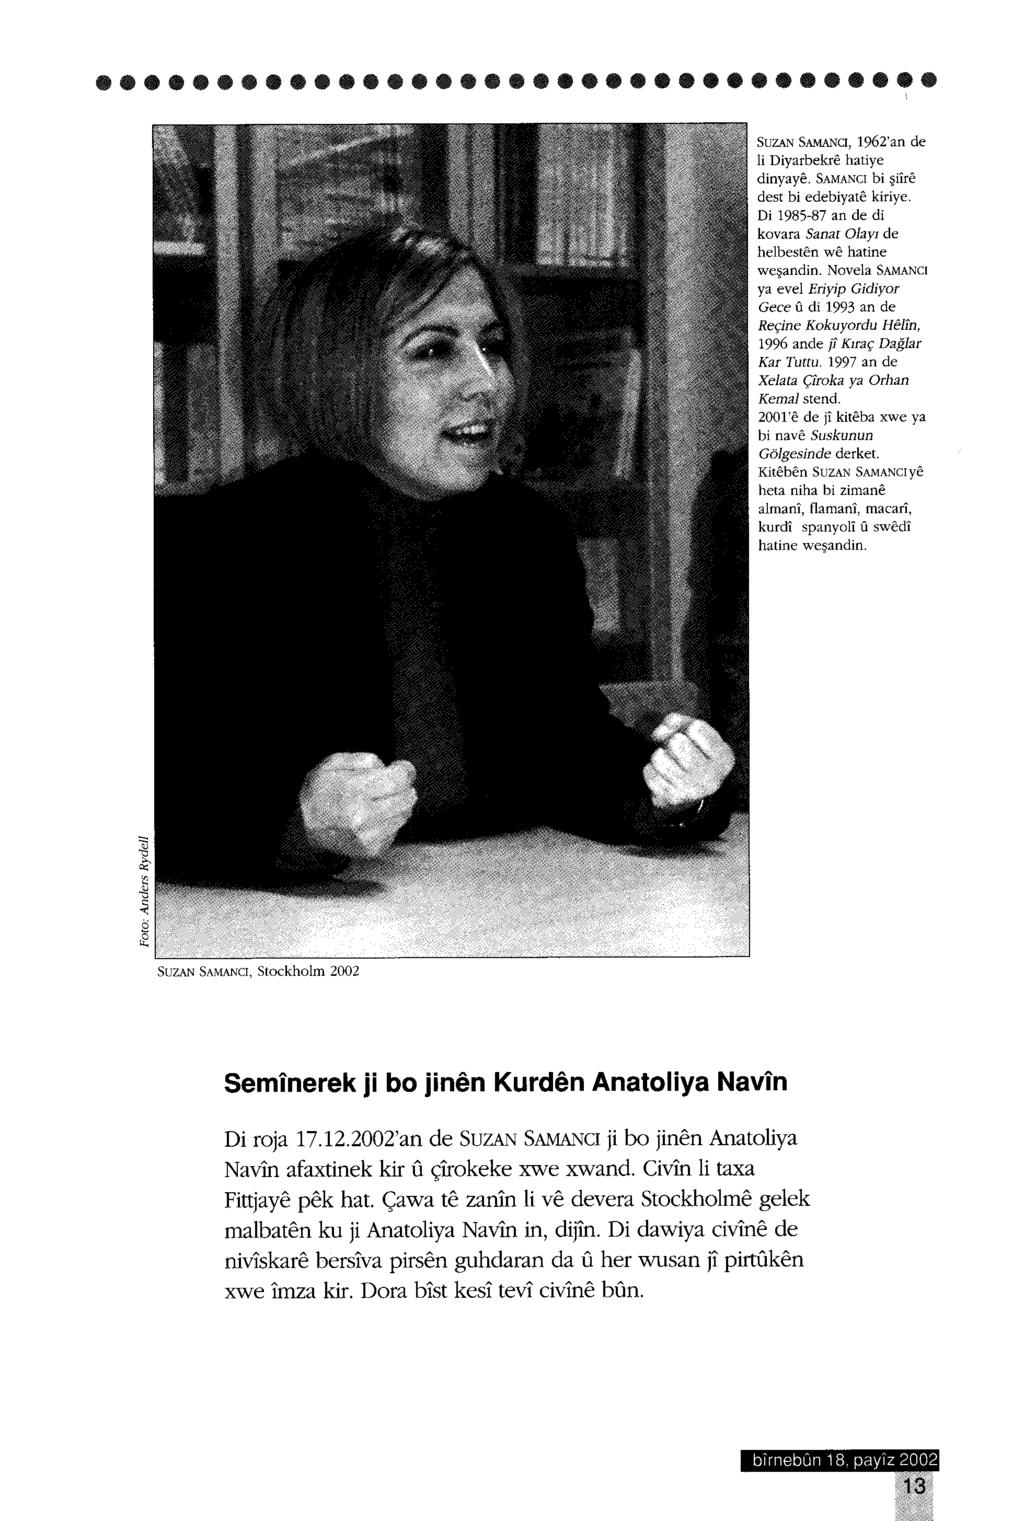 SUZAN SAMANCI, Stockholm 2002 Serninerek ji bo jinen Kurden Anatoliya Navin Di roja 17.12.2002'an de SuZAN SAMANel ji bo jinen Anatoliya Navin afaxtinek kir u çirokeke xwe xwand.